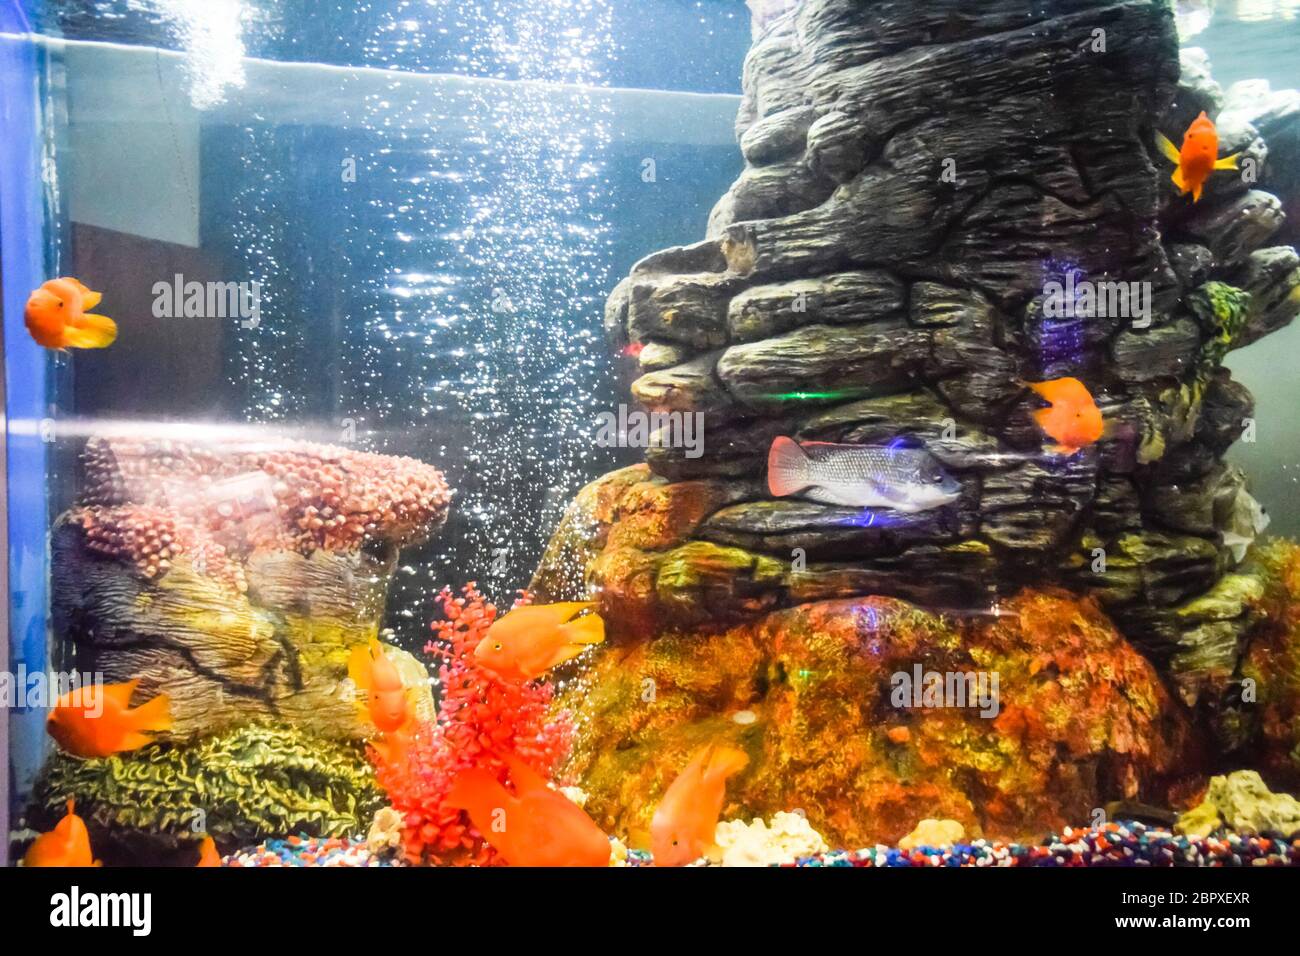 Fish in the aquarium of the aquarium, Scaridae Stock Photo